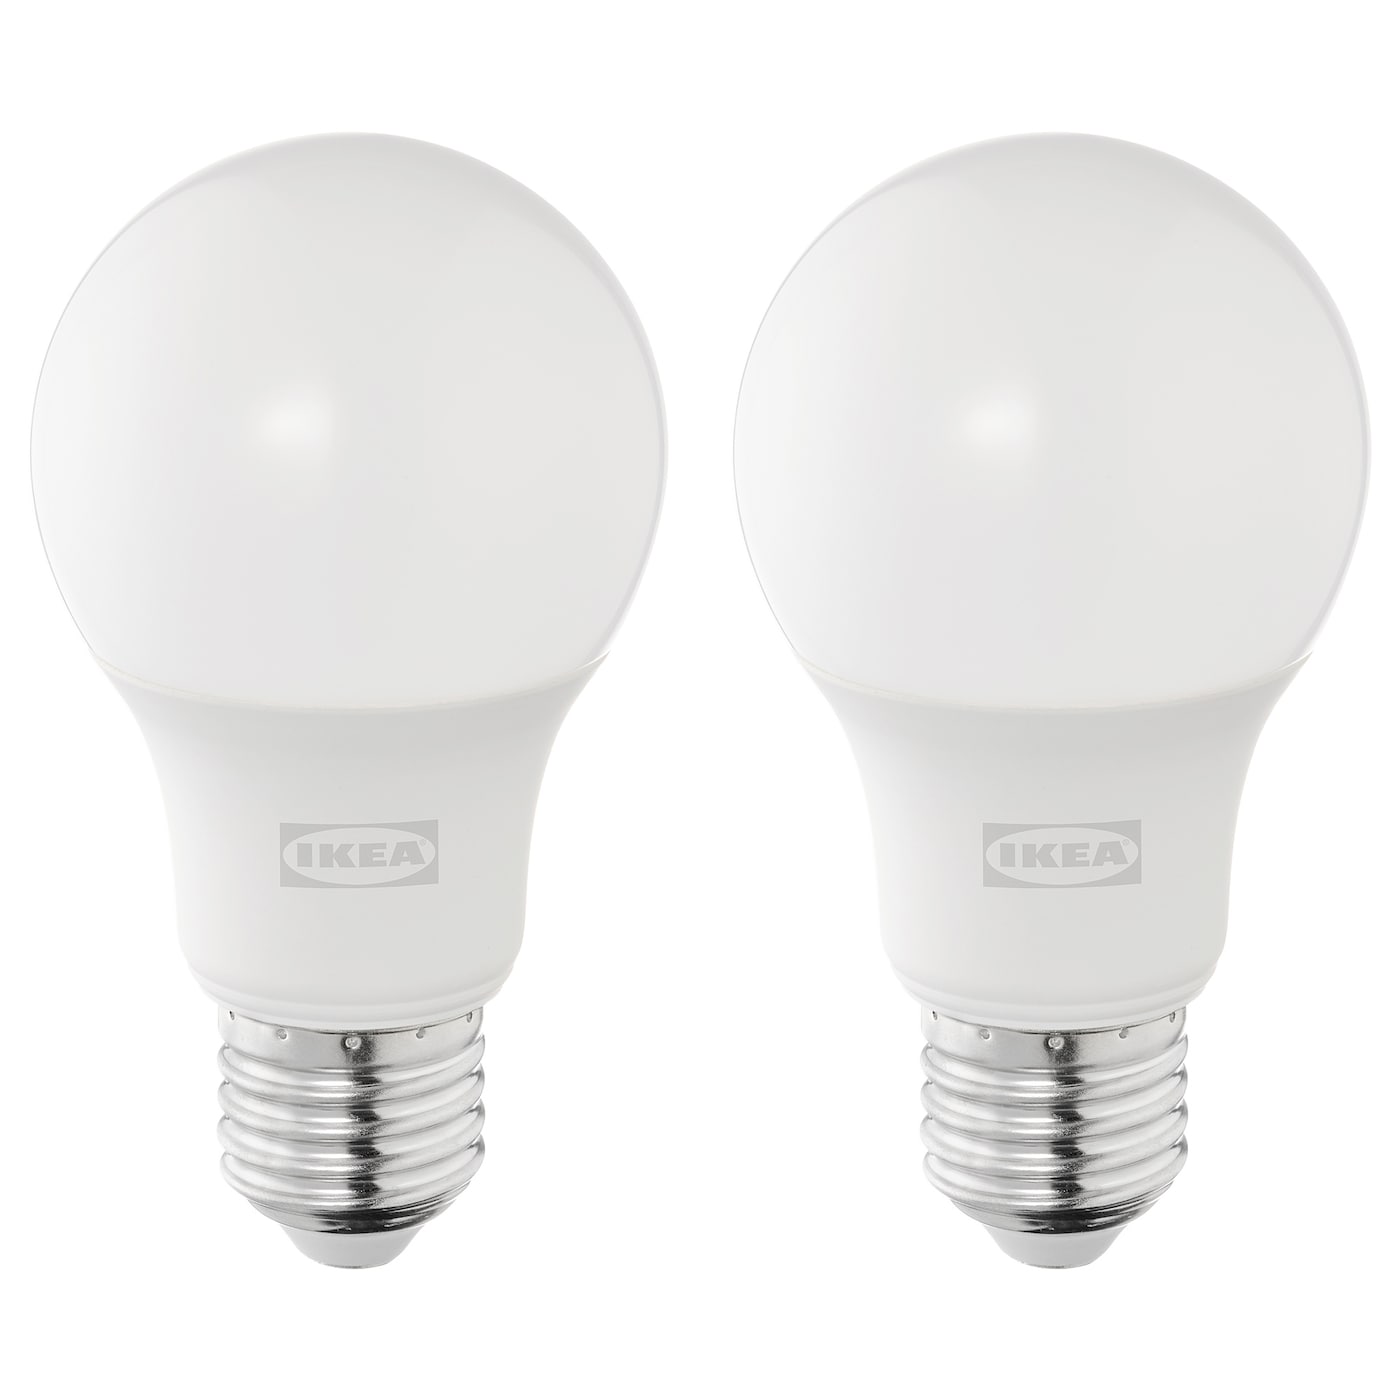 Светодиодная лампа - SOLHETTA IKEA/ СОЛХЕТТА ИКЕА, 60 мм,  белый